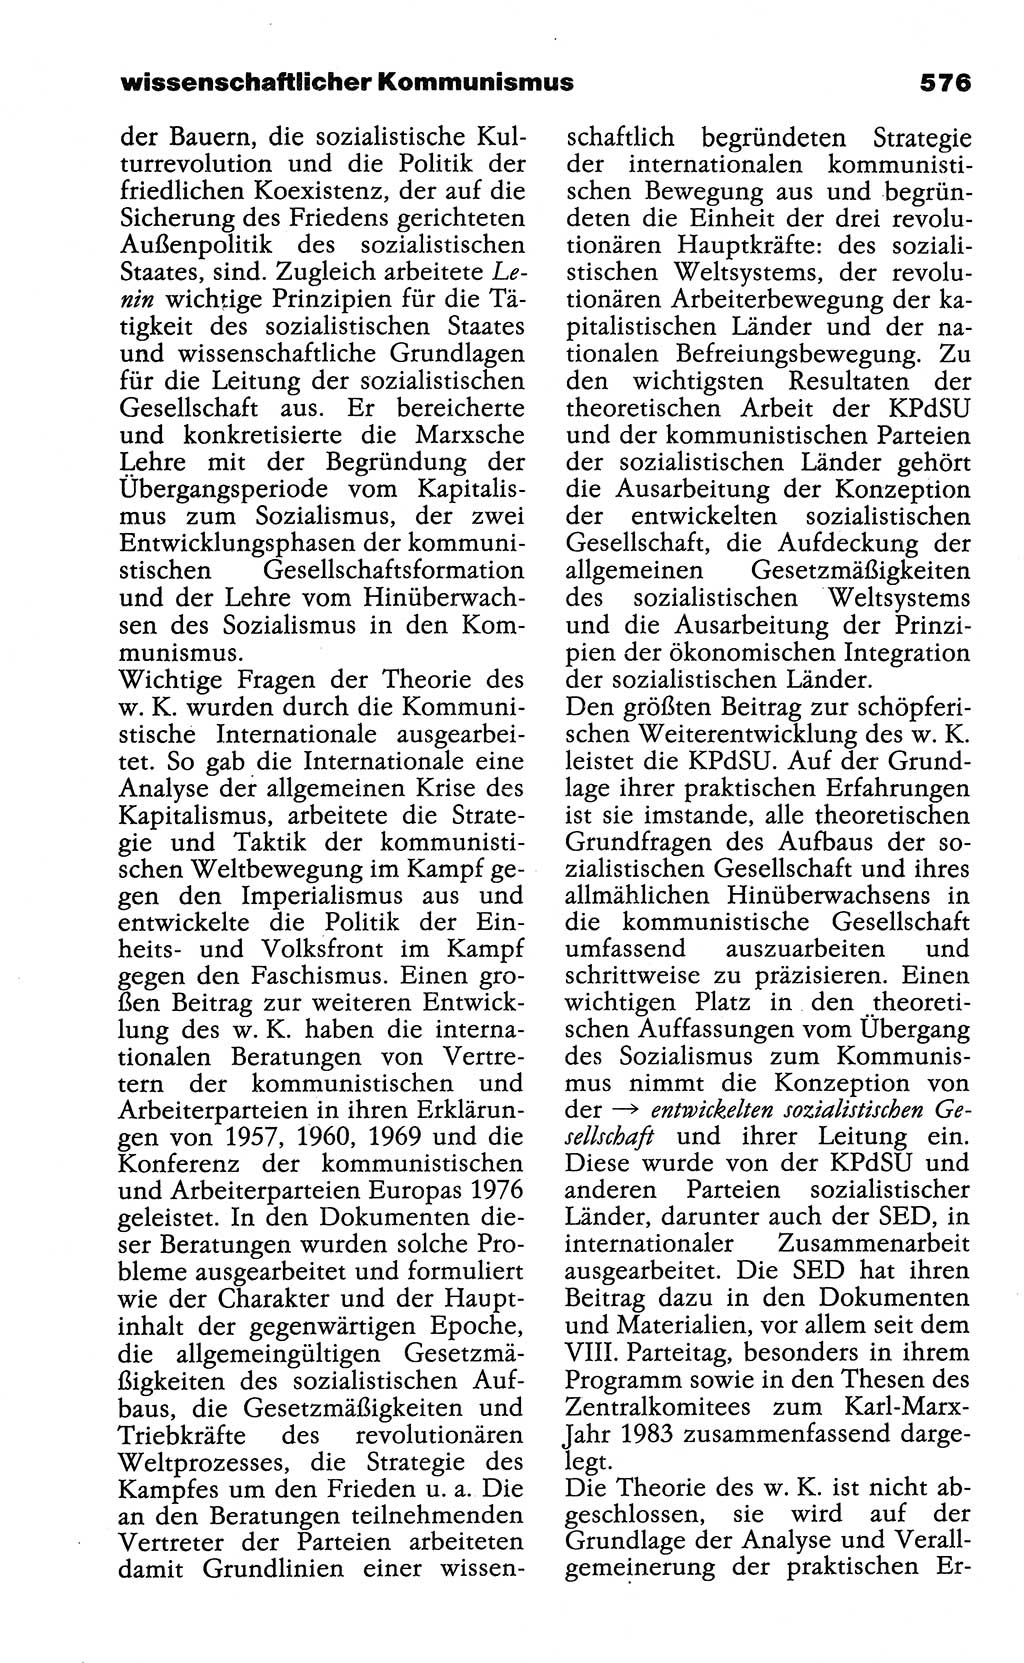 Wörterbuch der marxistisch-leninistischen Philosophie [Deutsche Demokratische Republik (DDR)] 1985, Seite 576 (Wb. ML Phil. DDR 1985, S. 576)